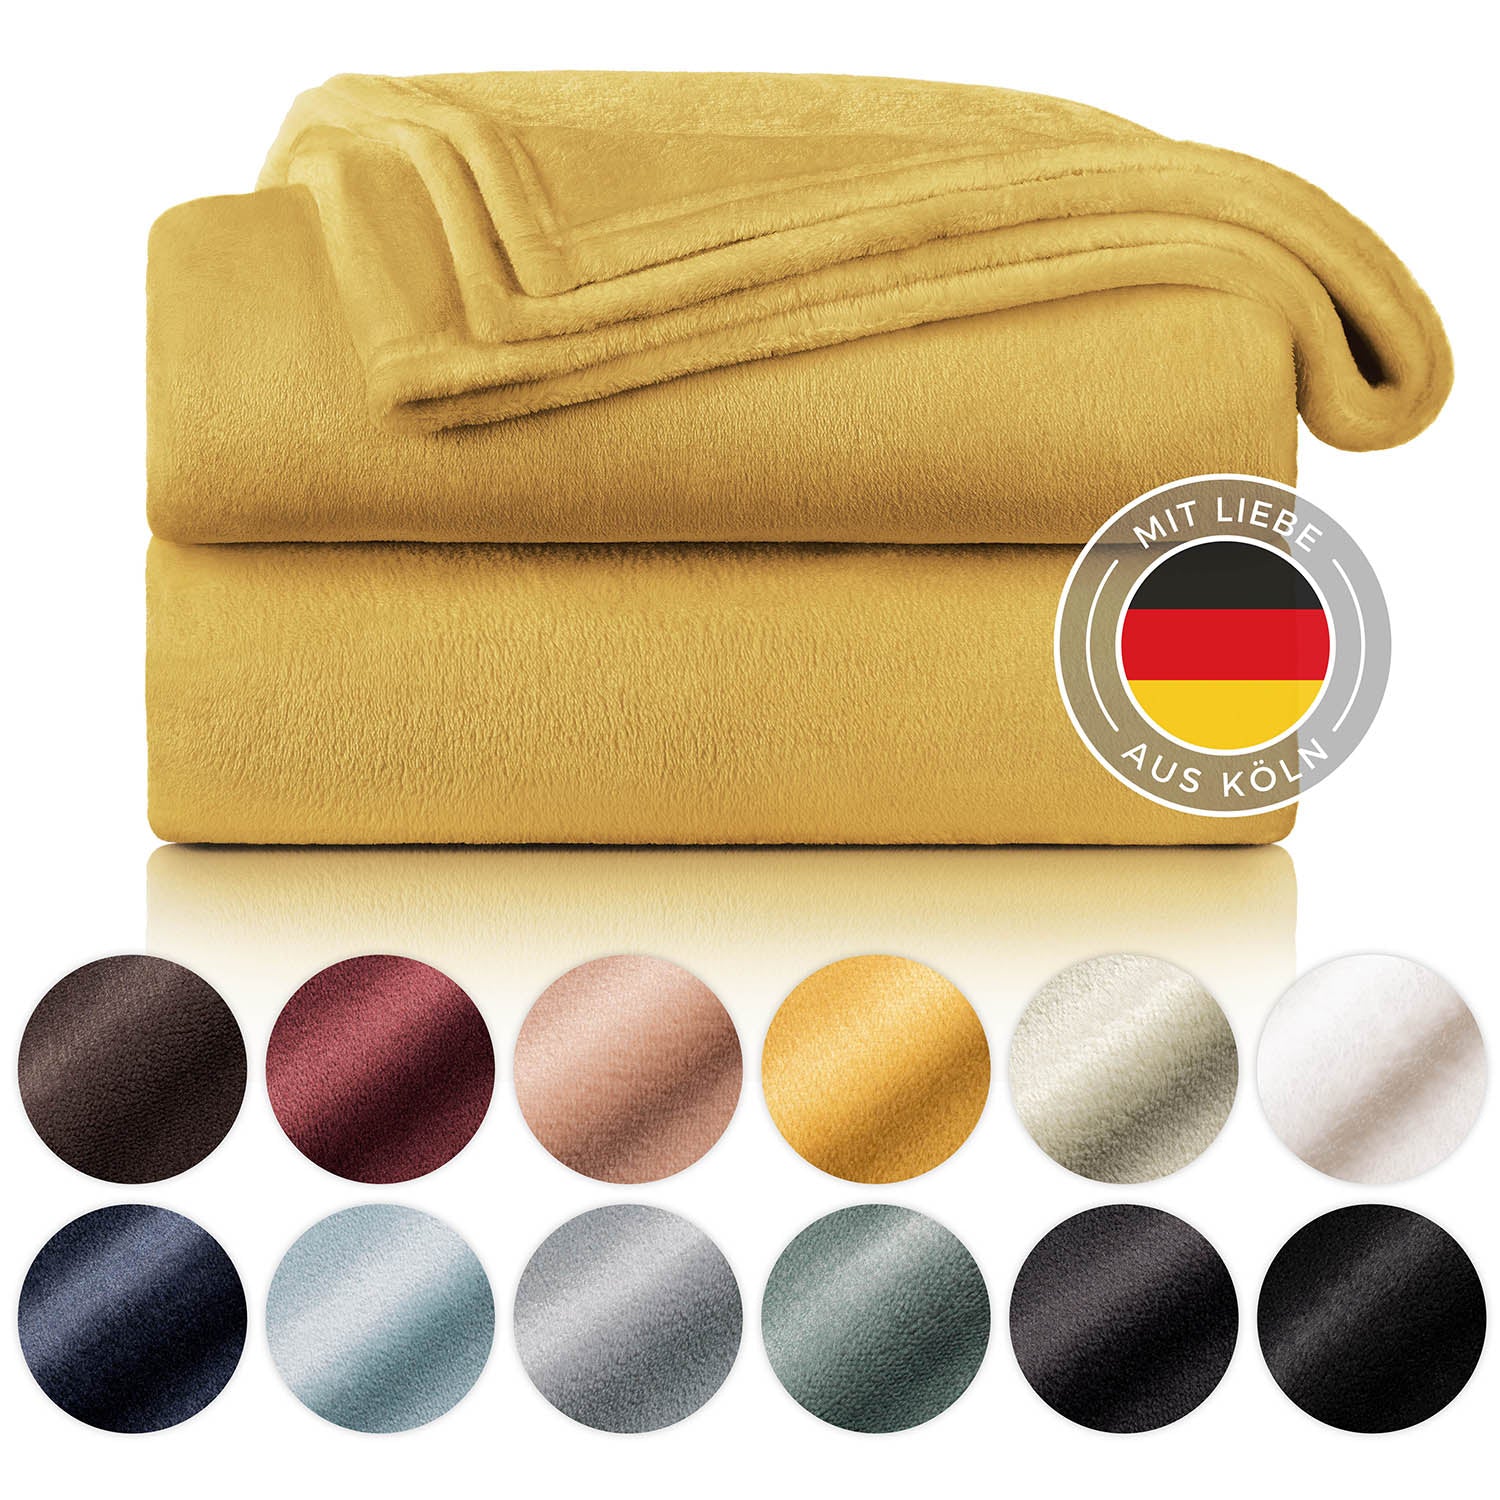 Gefaltete senfgelbe Fleece-Kuscheldecke, präsentiert neben einer Farbpalette und einem Label 'Mit Liebe aus Köln'.